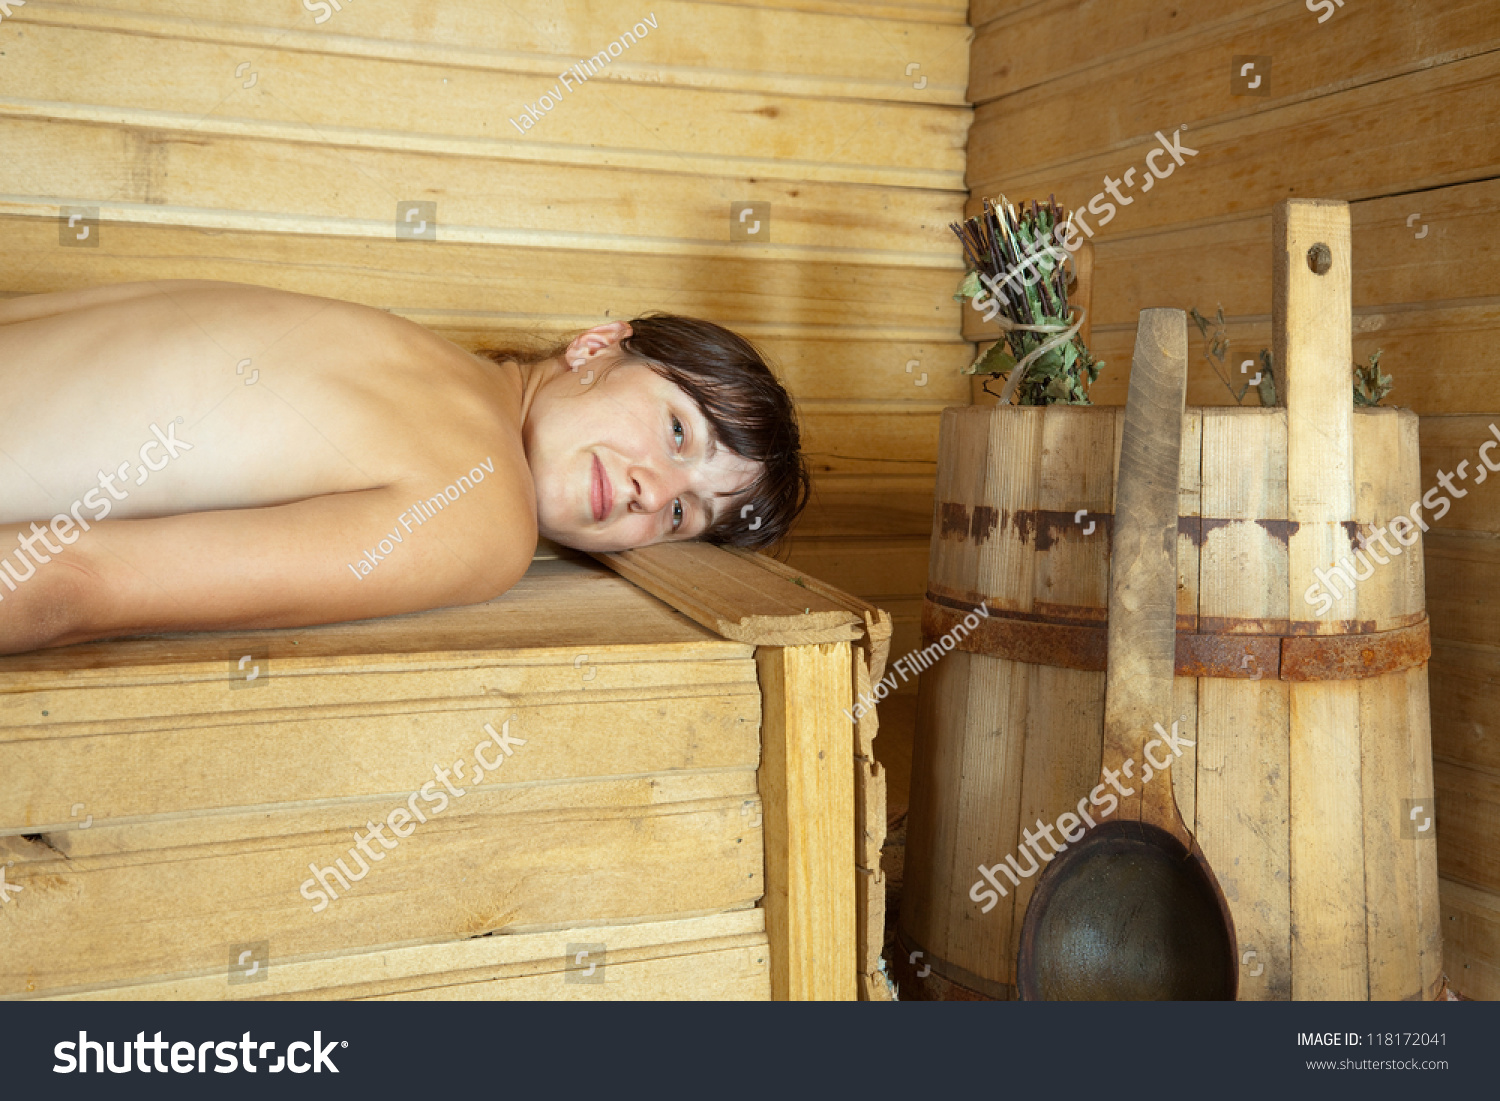 Деревенские женщины в бане фото